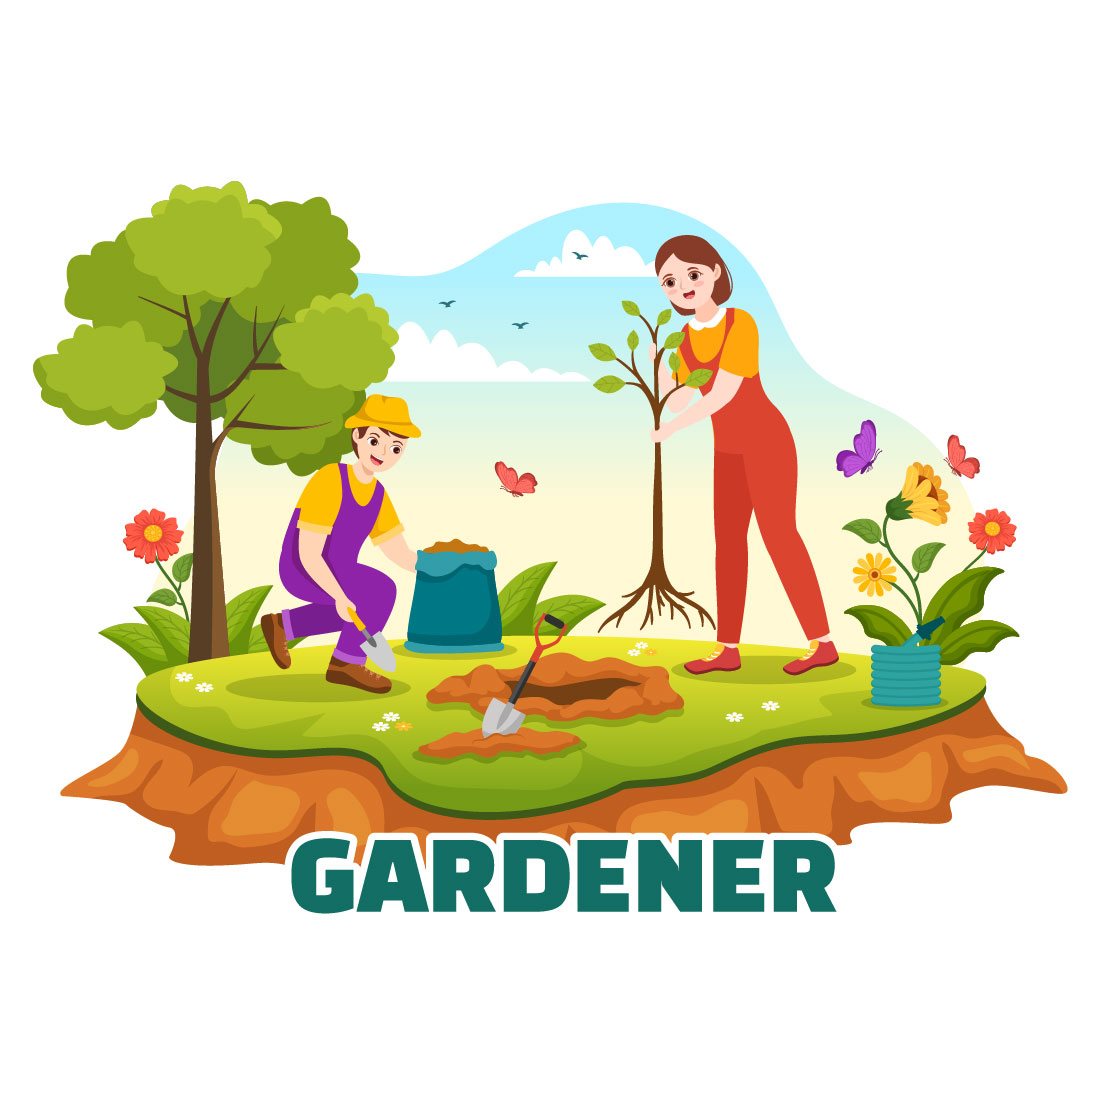 15 Summer Gardener Vector Illustration cover image.